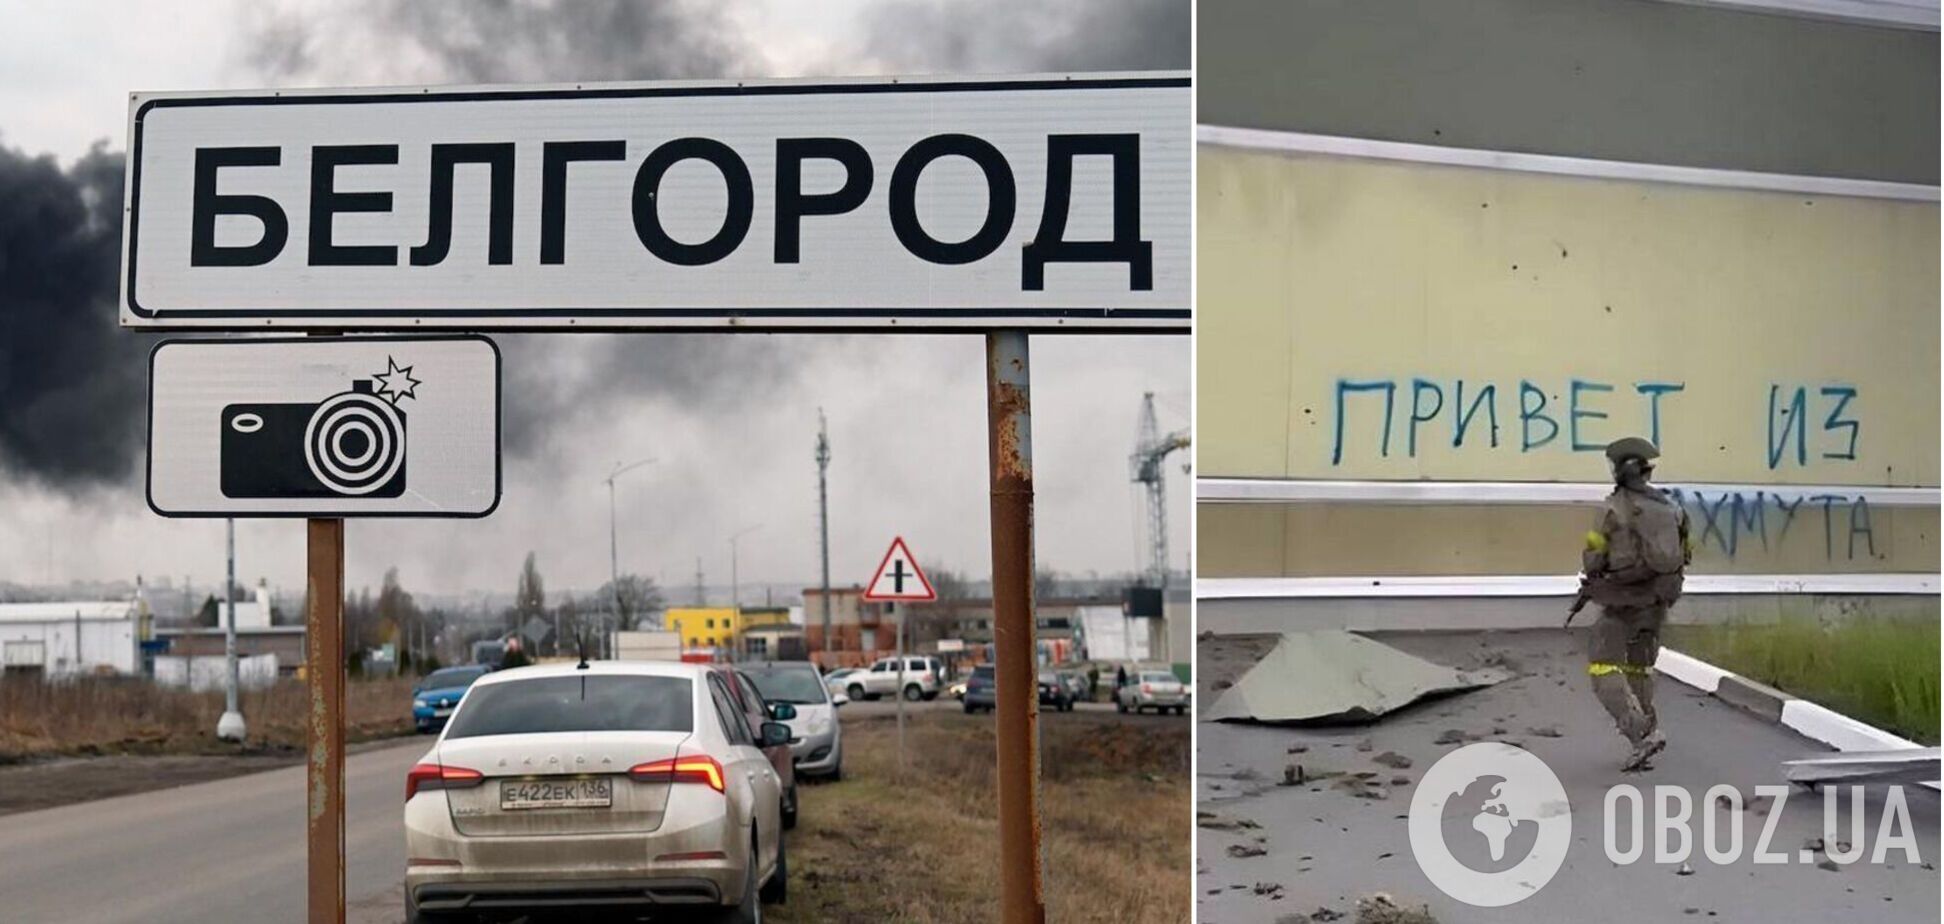 'Виїжджають масово, кому є куди їхати': жителі Бєлгородської області змирилися з евакуацією. Перехоплення
